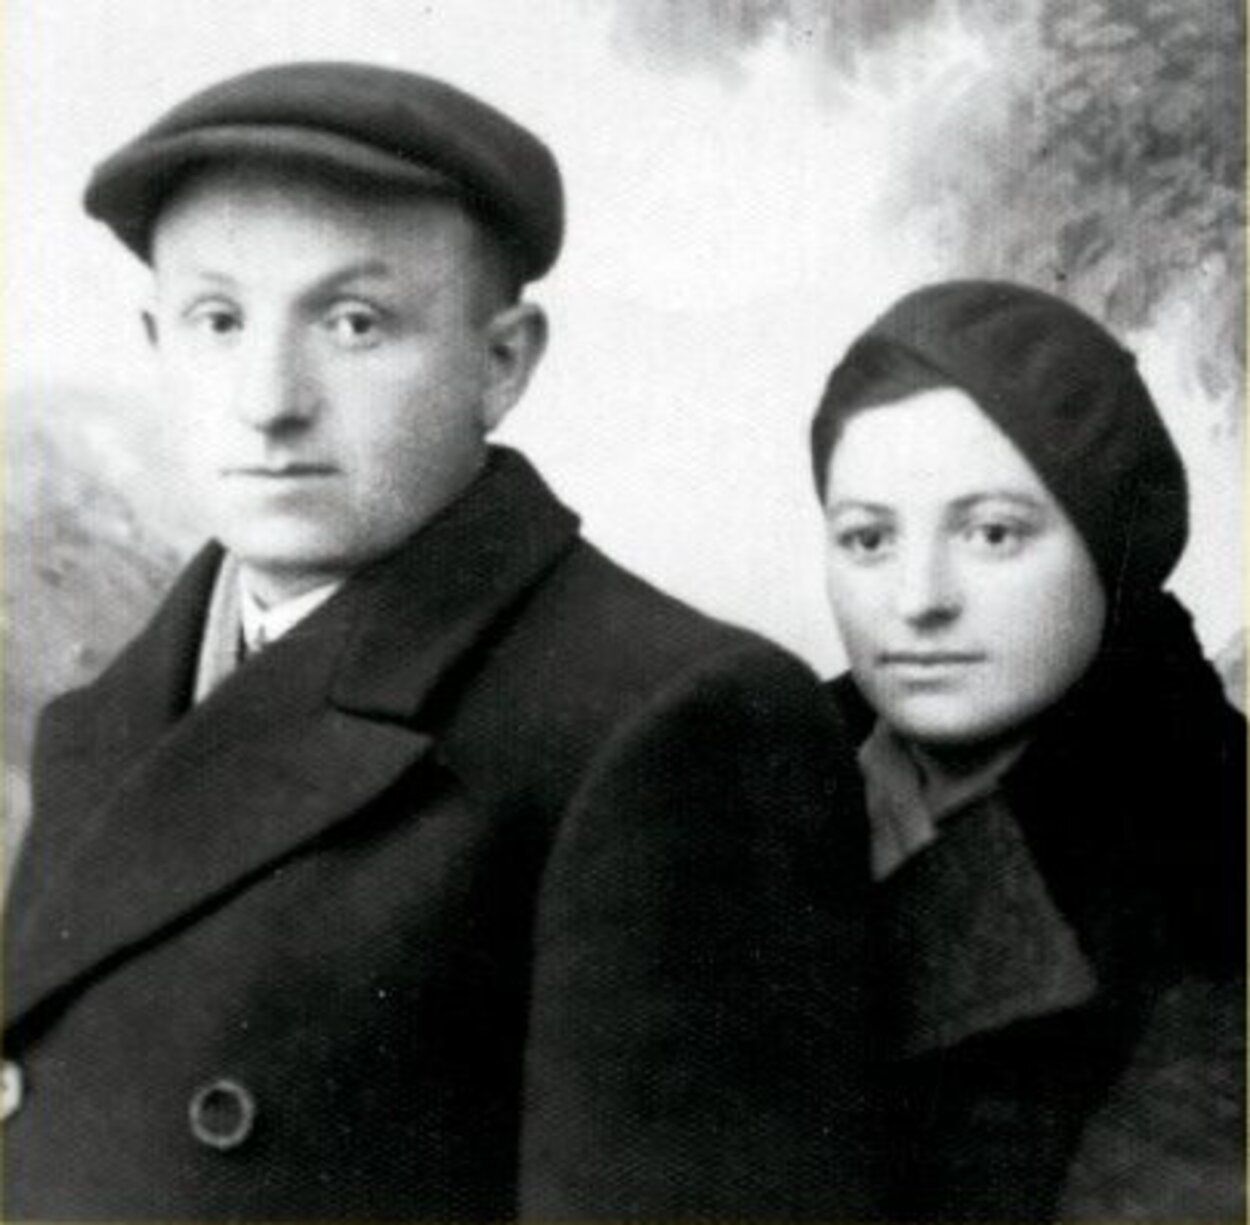 El escritor Ivan Jablonka recrea la vida de sus abuelos asesinados en Auschwitz